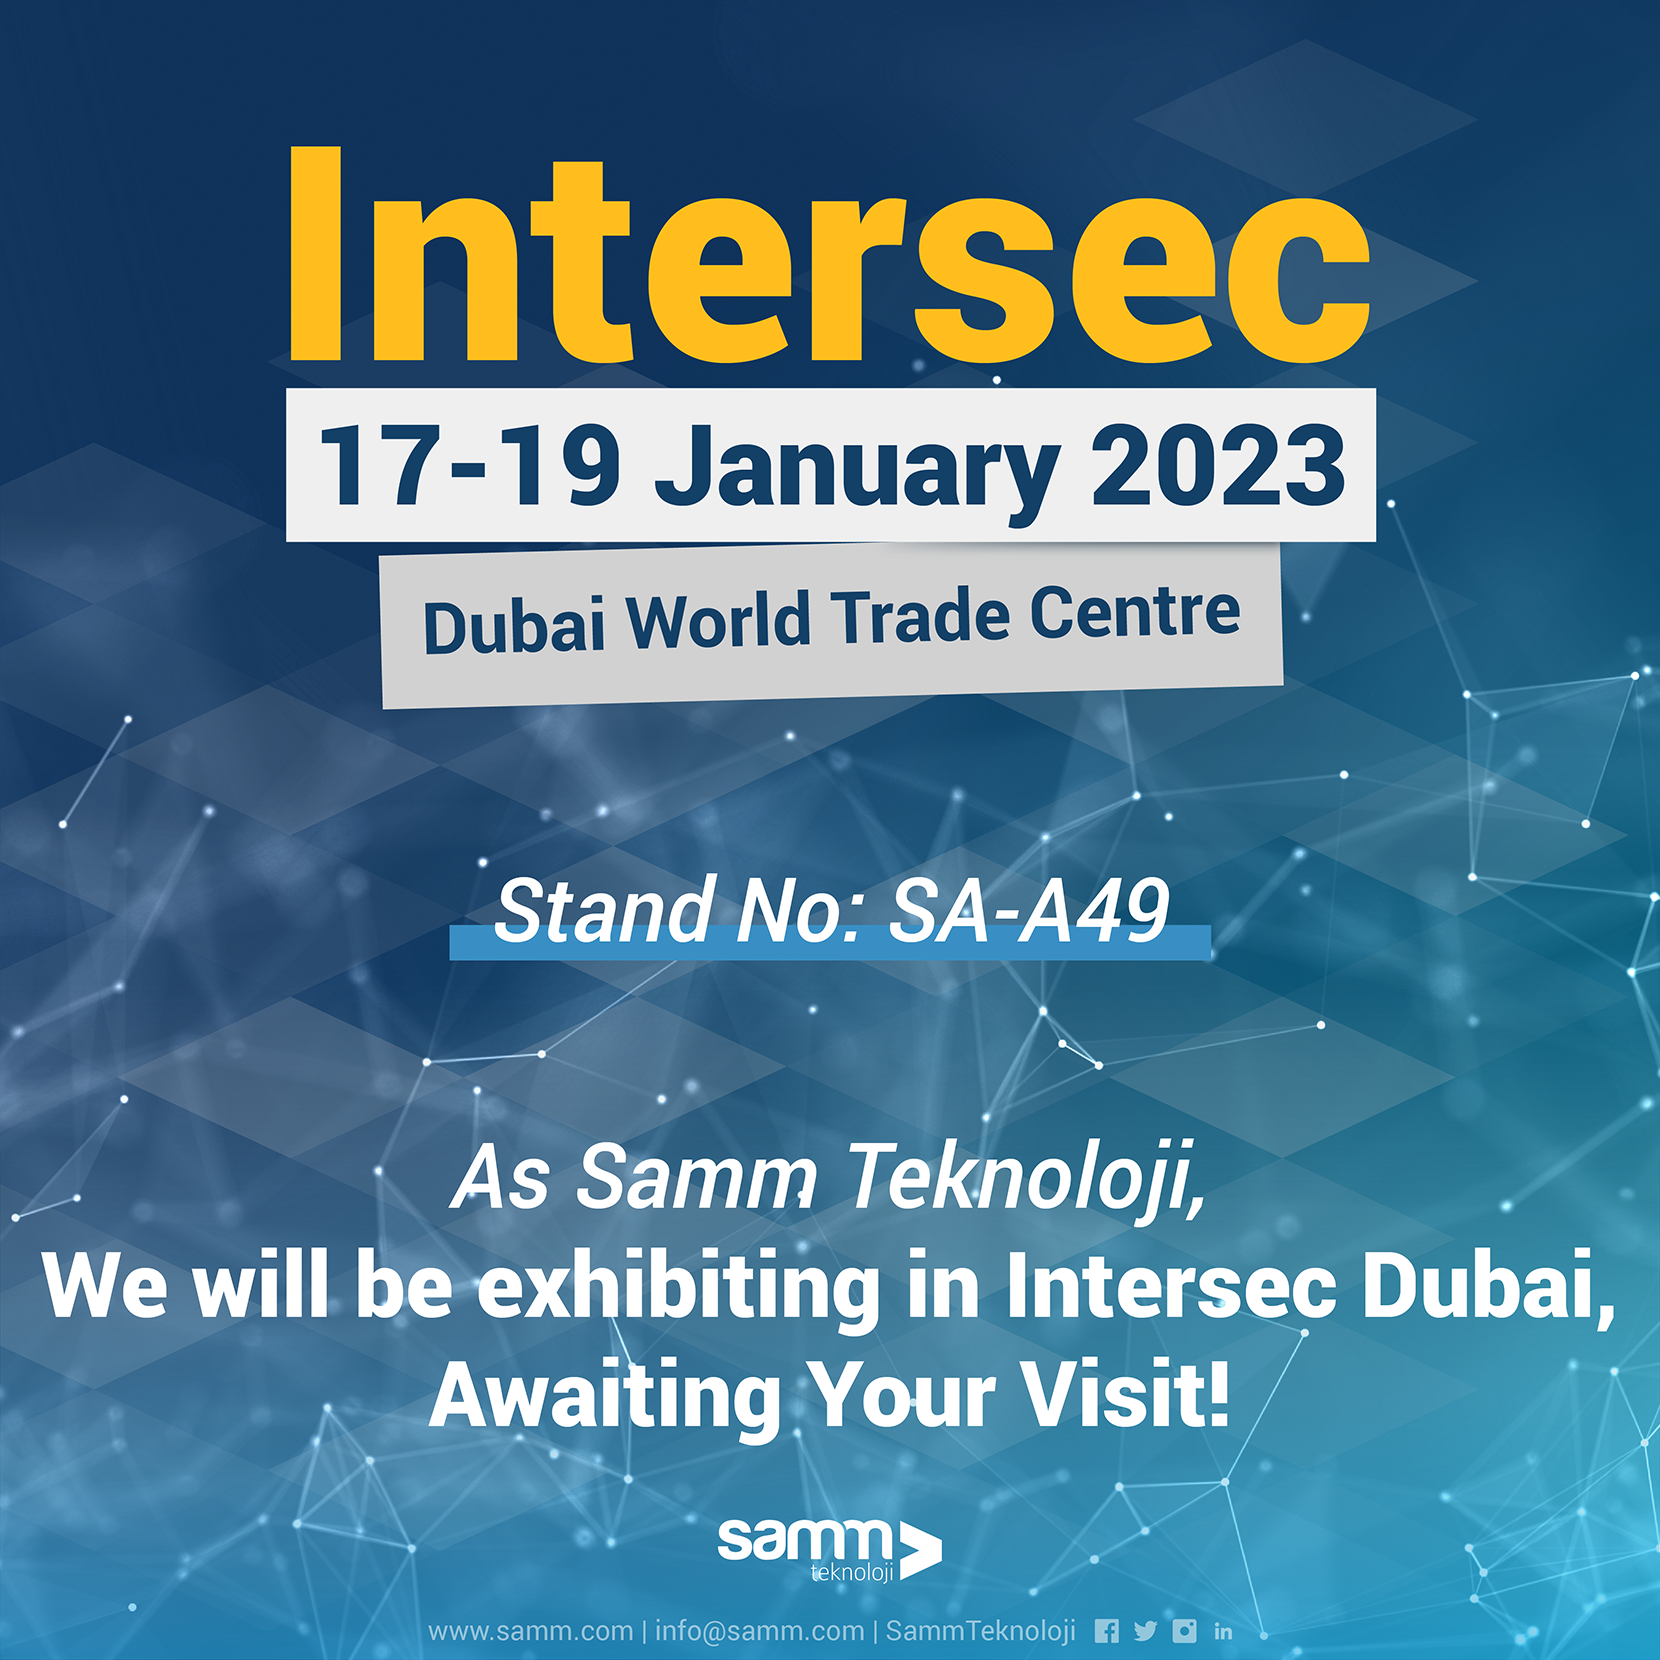 We'll Attend the Intersec Exhibition in Dubai!